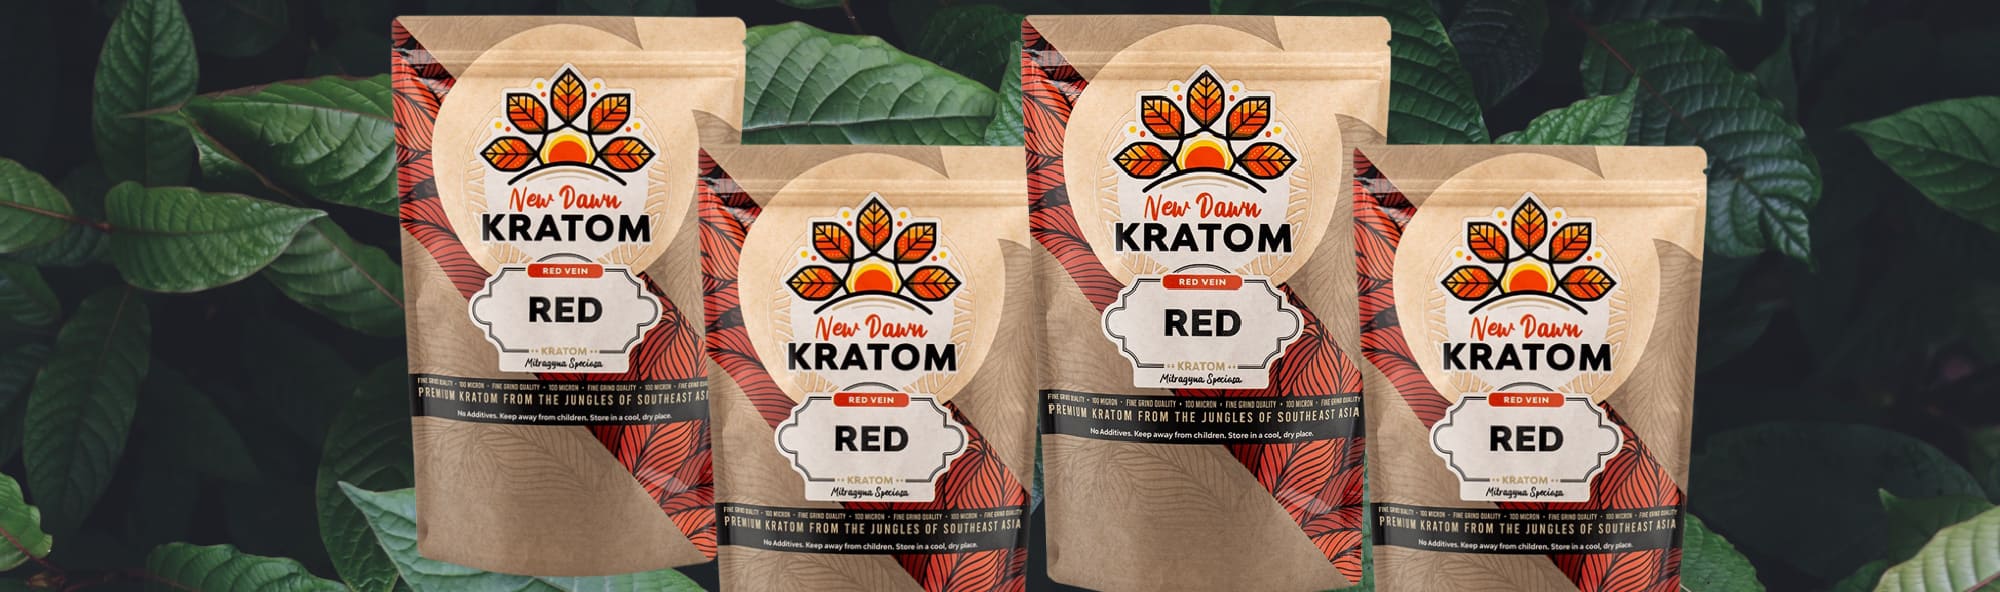 image of red kratom strains for socializing